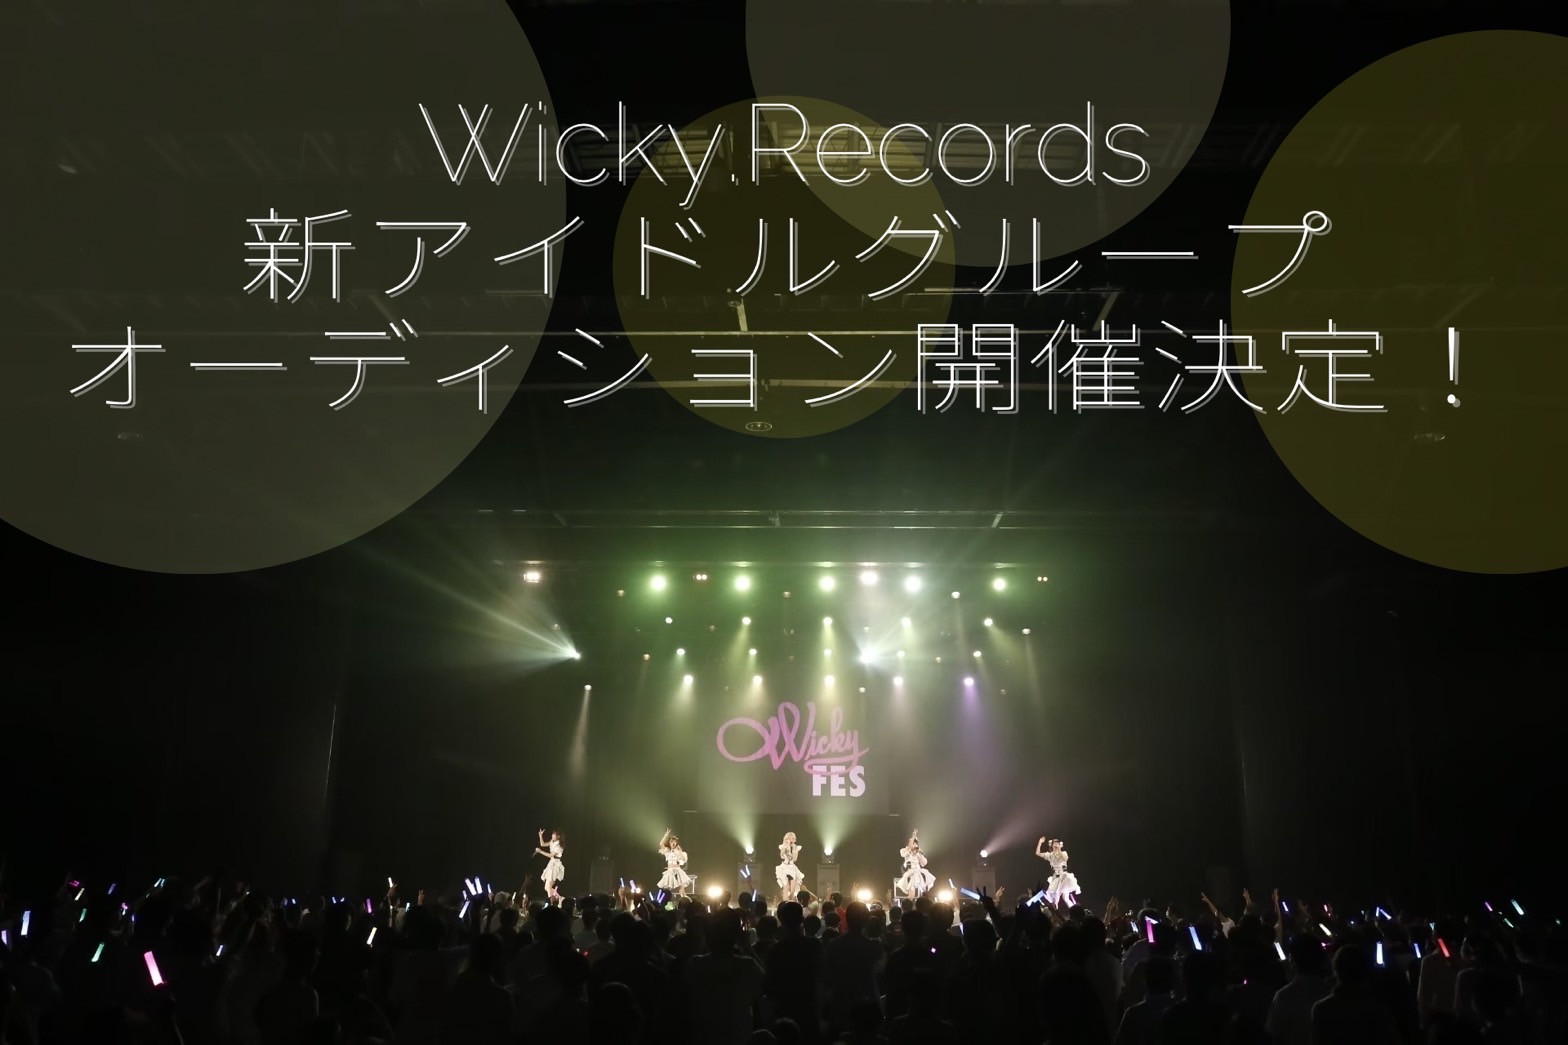 I’mew（あいみゅう）を手掛ける、Wicky.Records新アイドルグループオーディション開催決定！